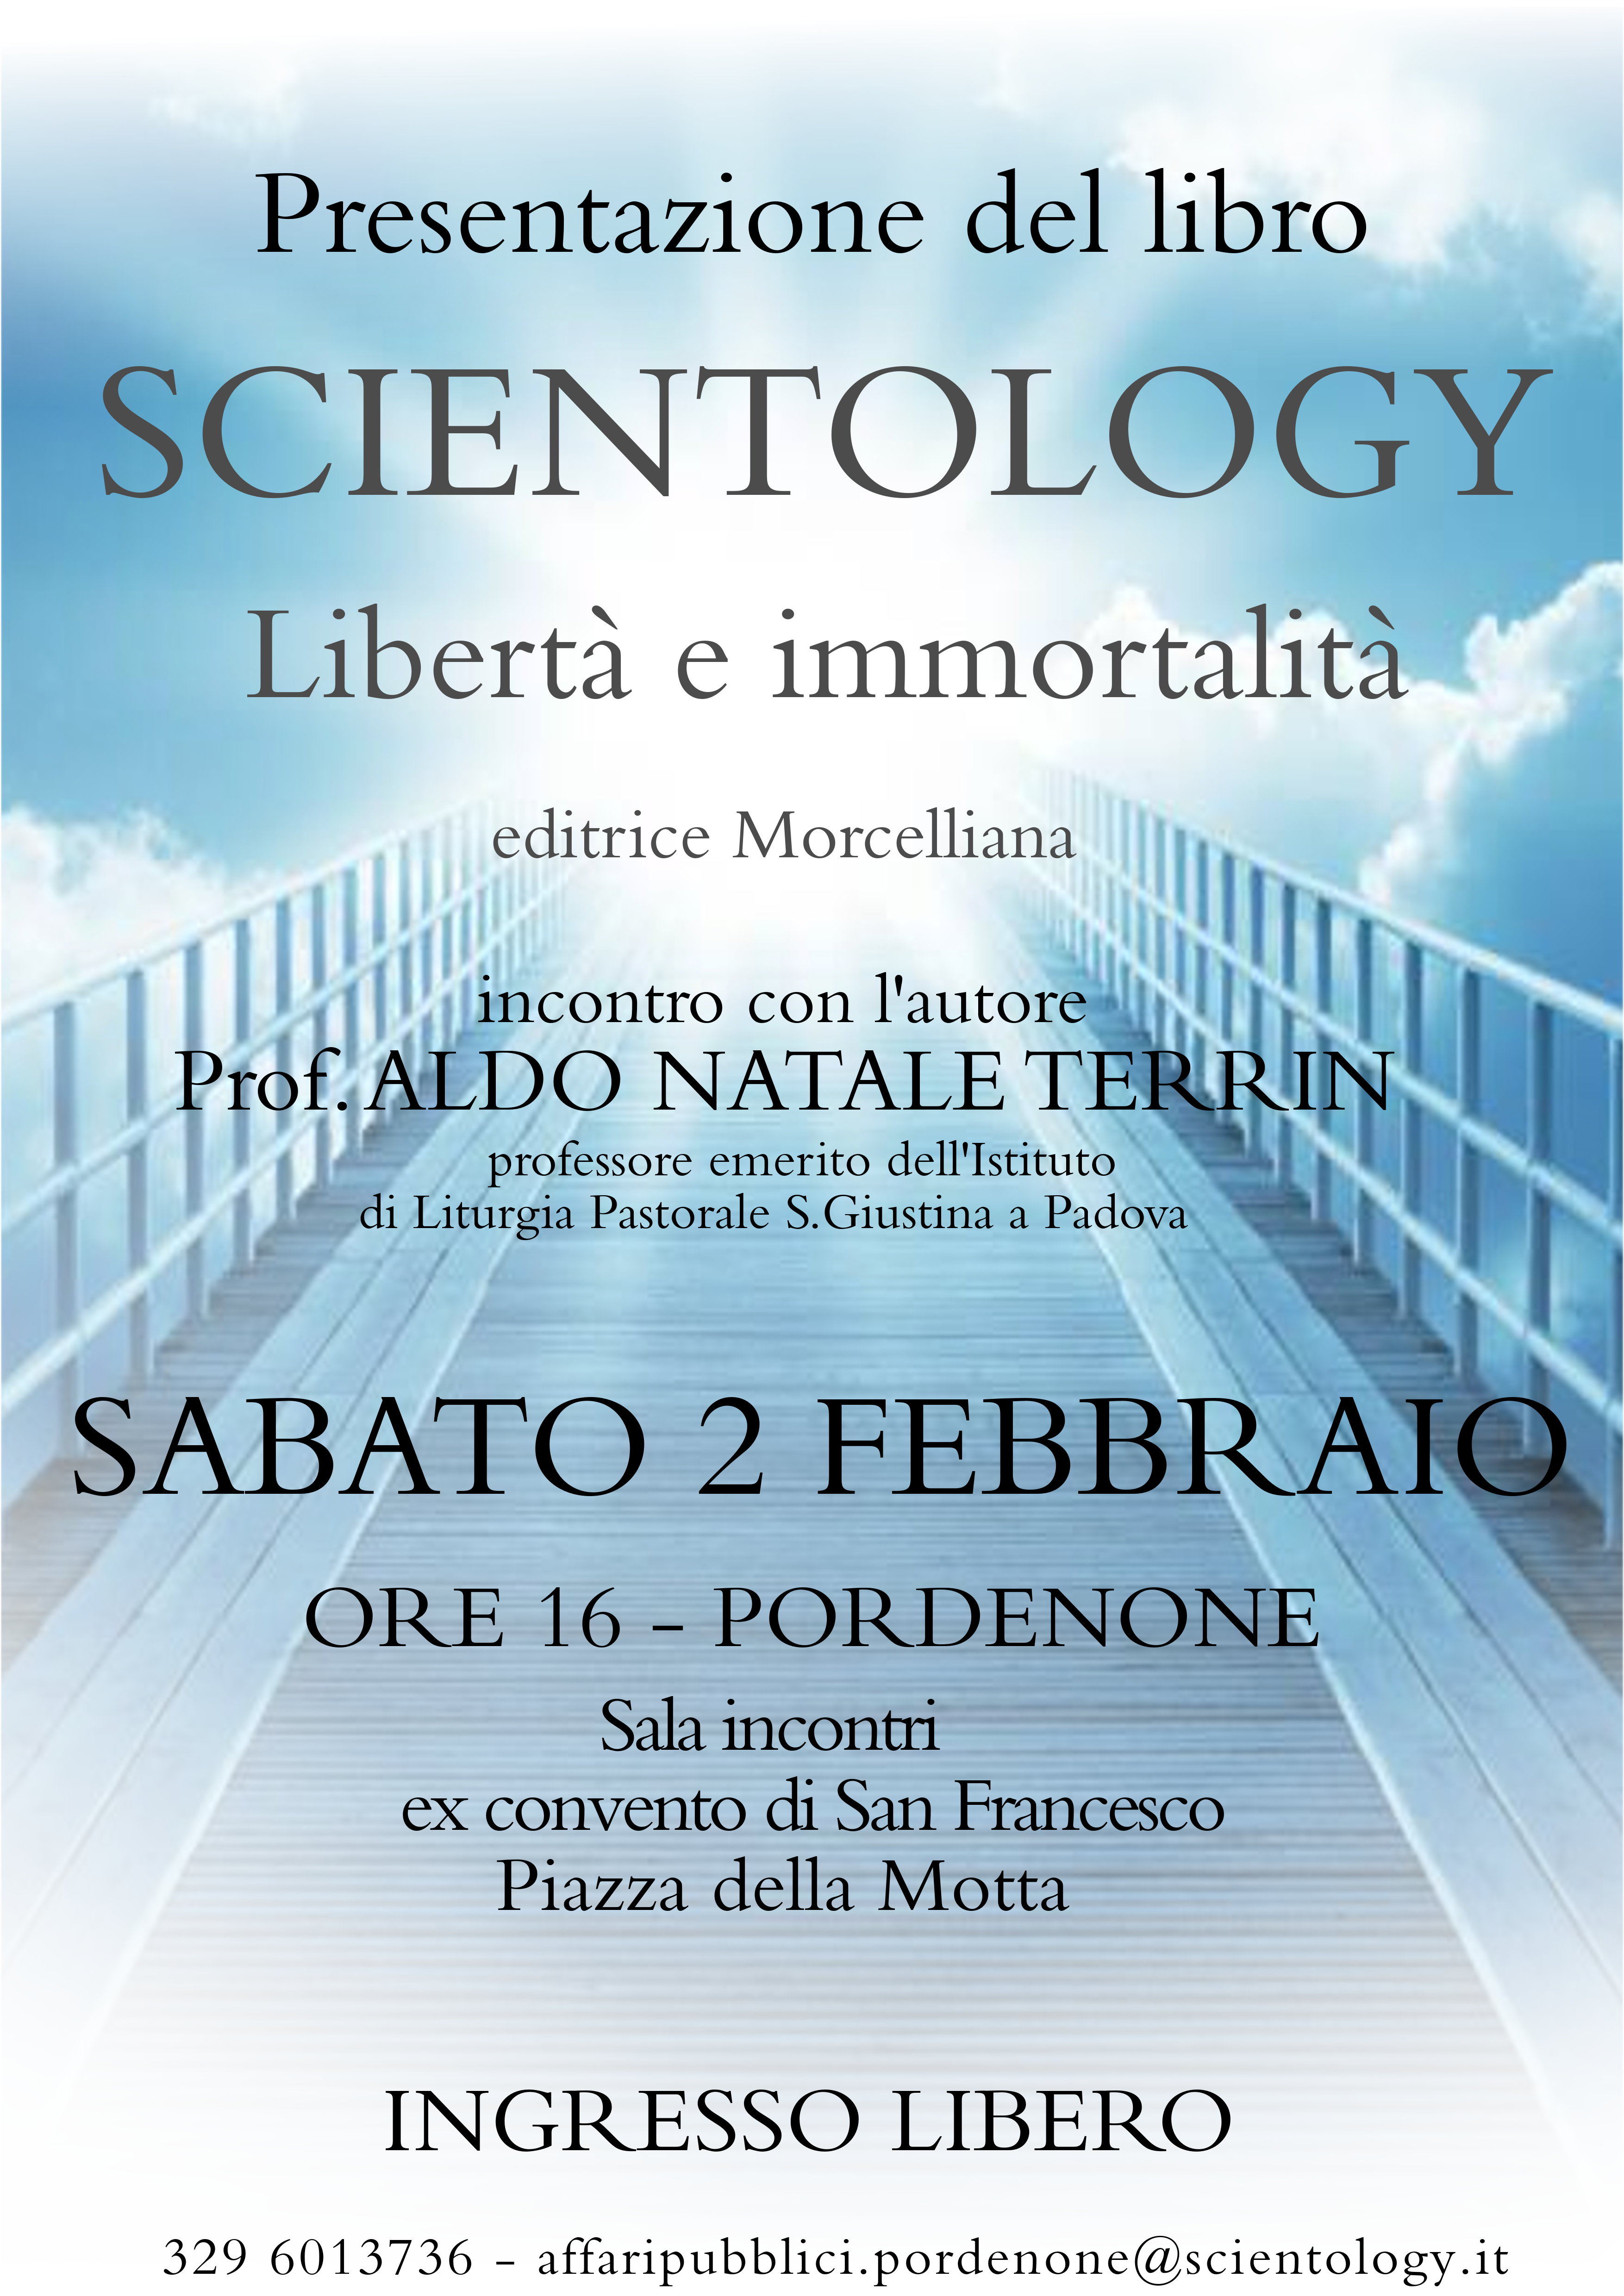 Il Prof. Terrin presenta il suo libro  “SCIENTOLOGY Libertà e Immortalità” a Pordenone